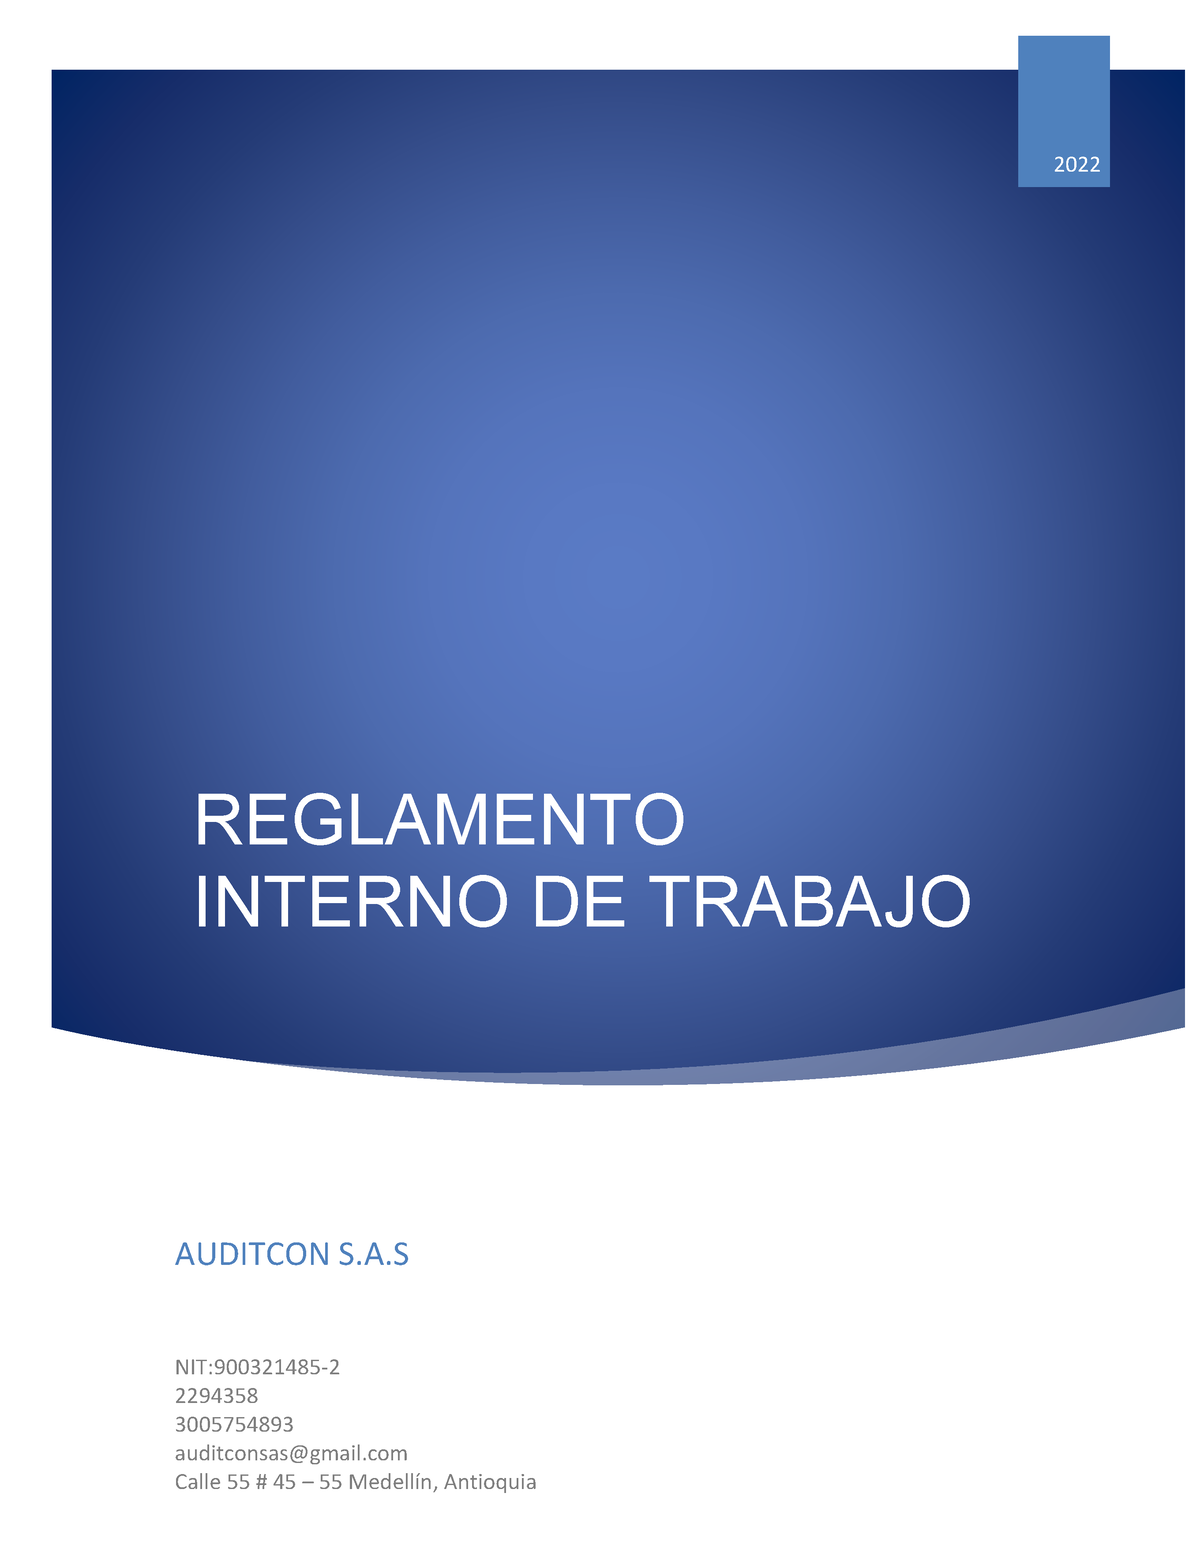 Reglamento Interno De Trabajo Empresa Auditcon S Reglamento Interno De Trabajo 2022 Auditcon S 5410